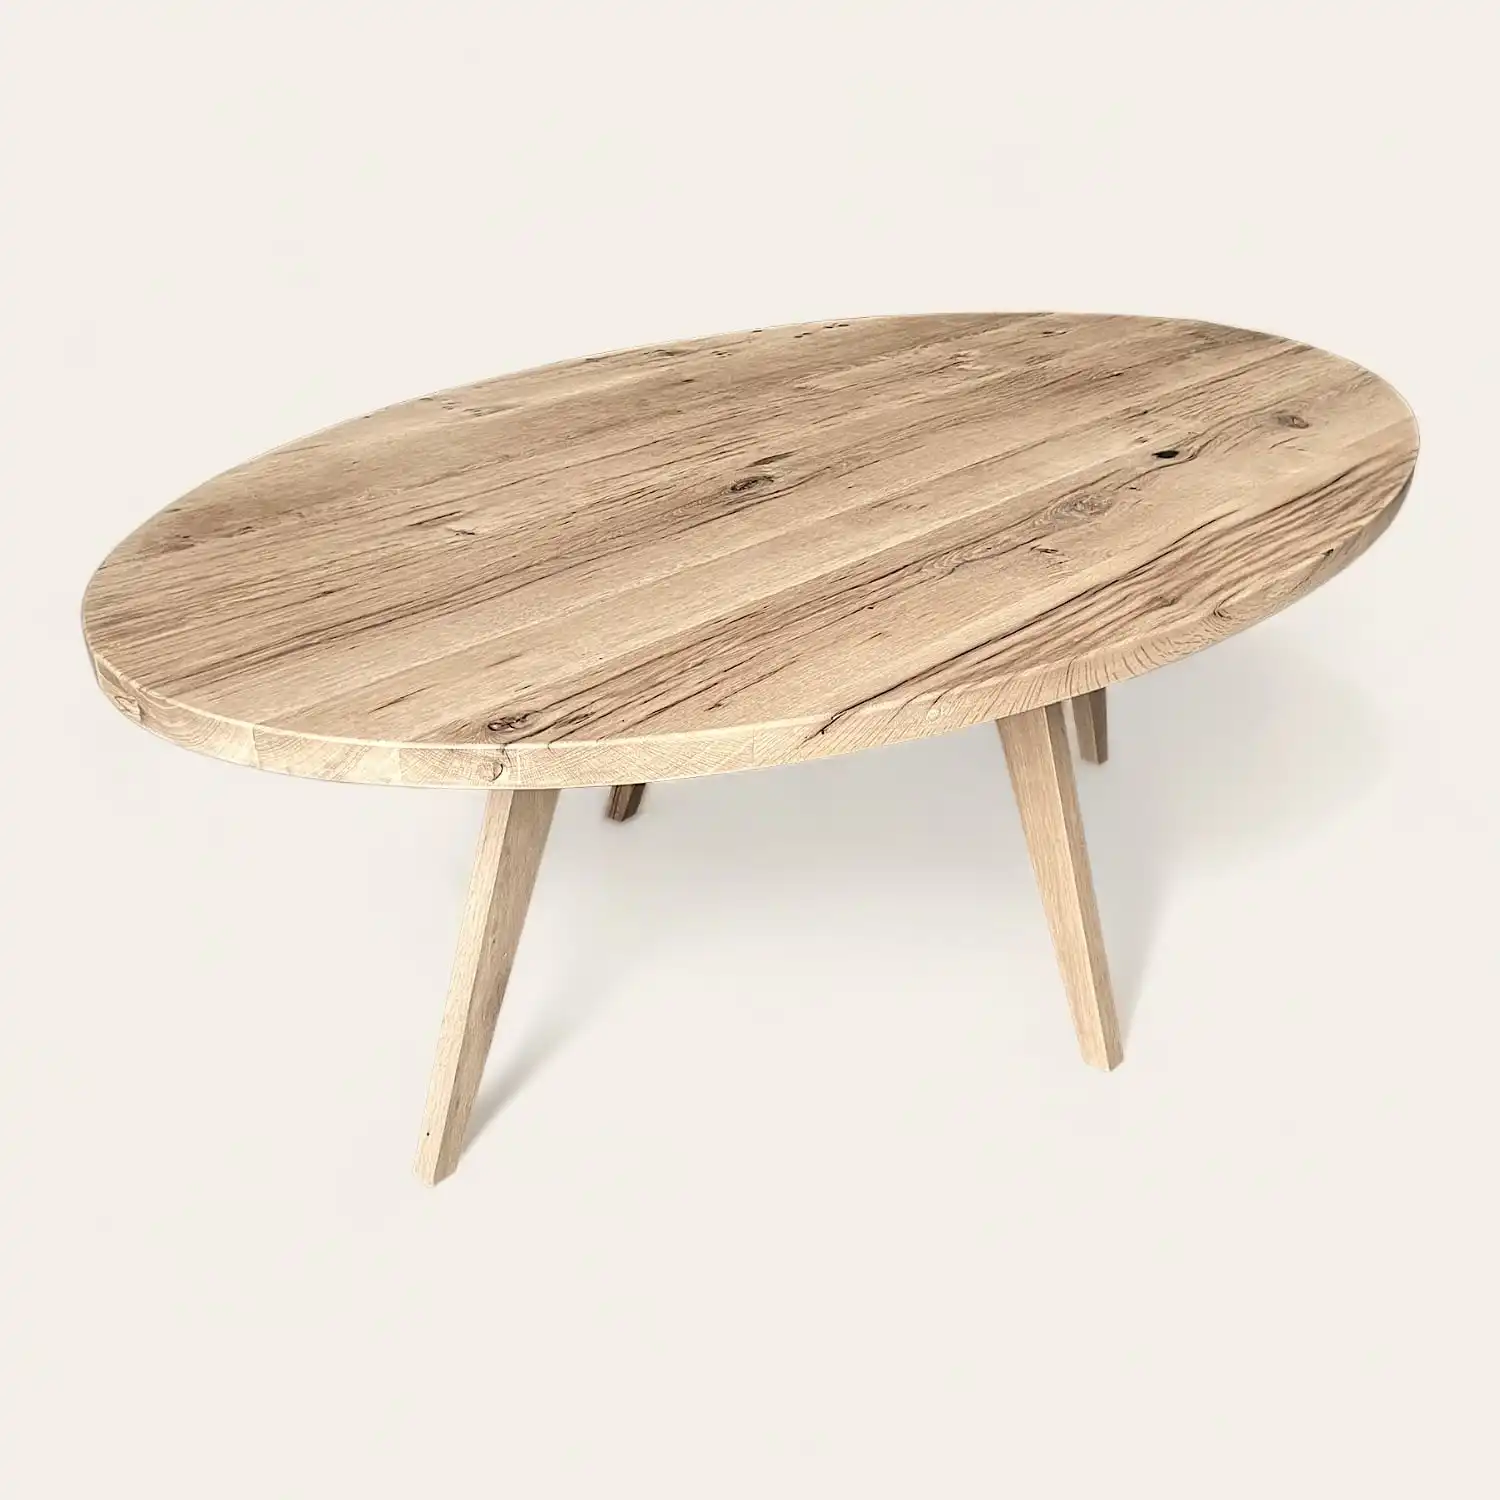  Une table rustique ovale en bois ancien avec deux pieds sur fond blanc. 